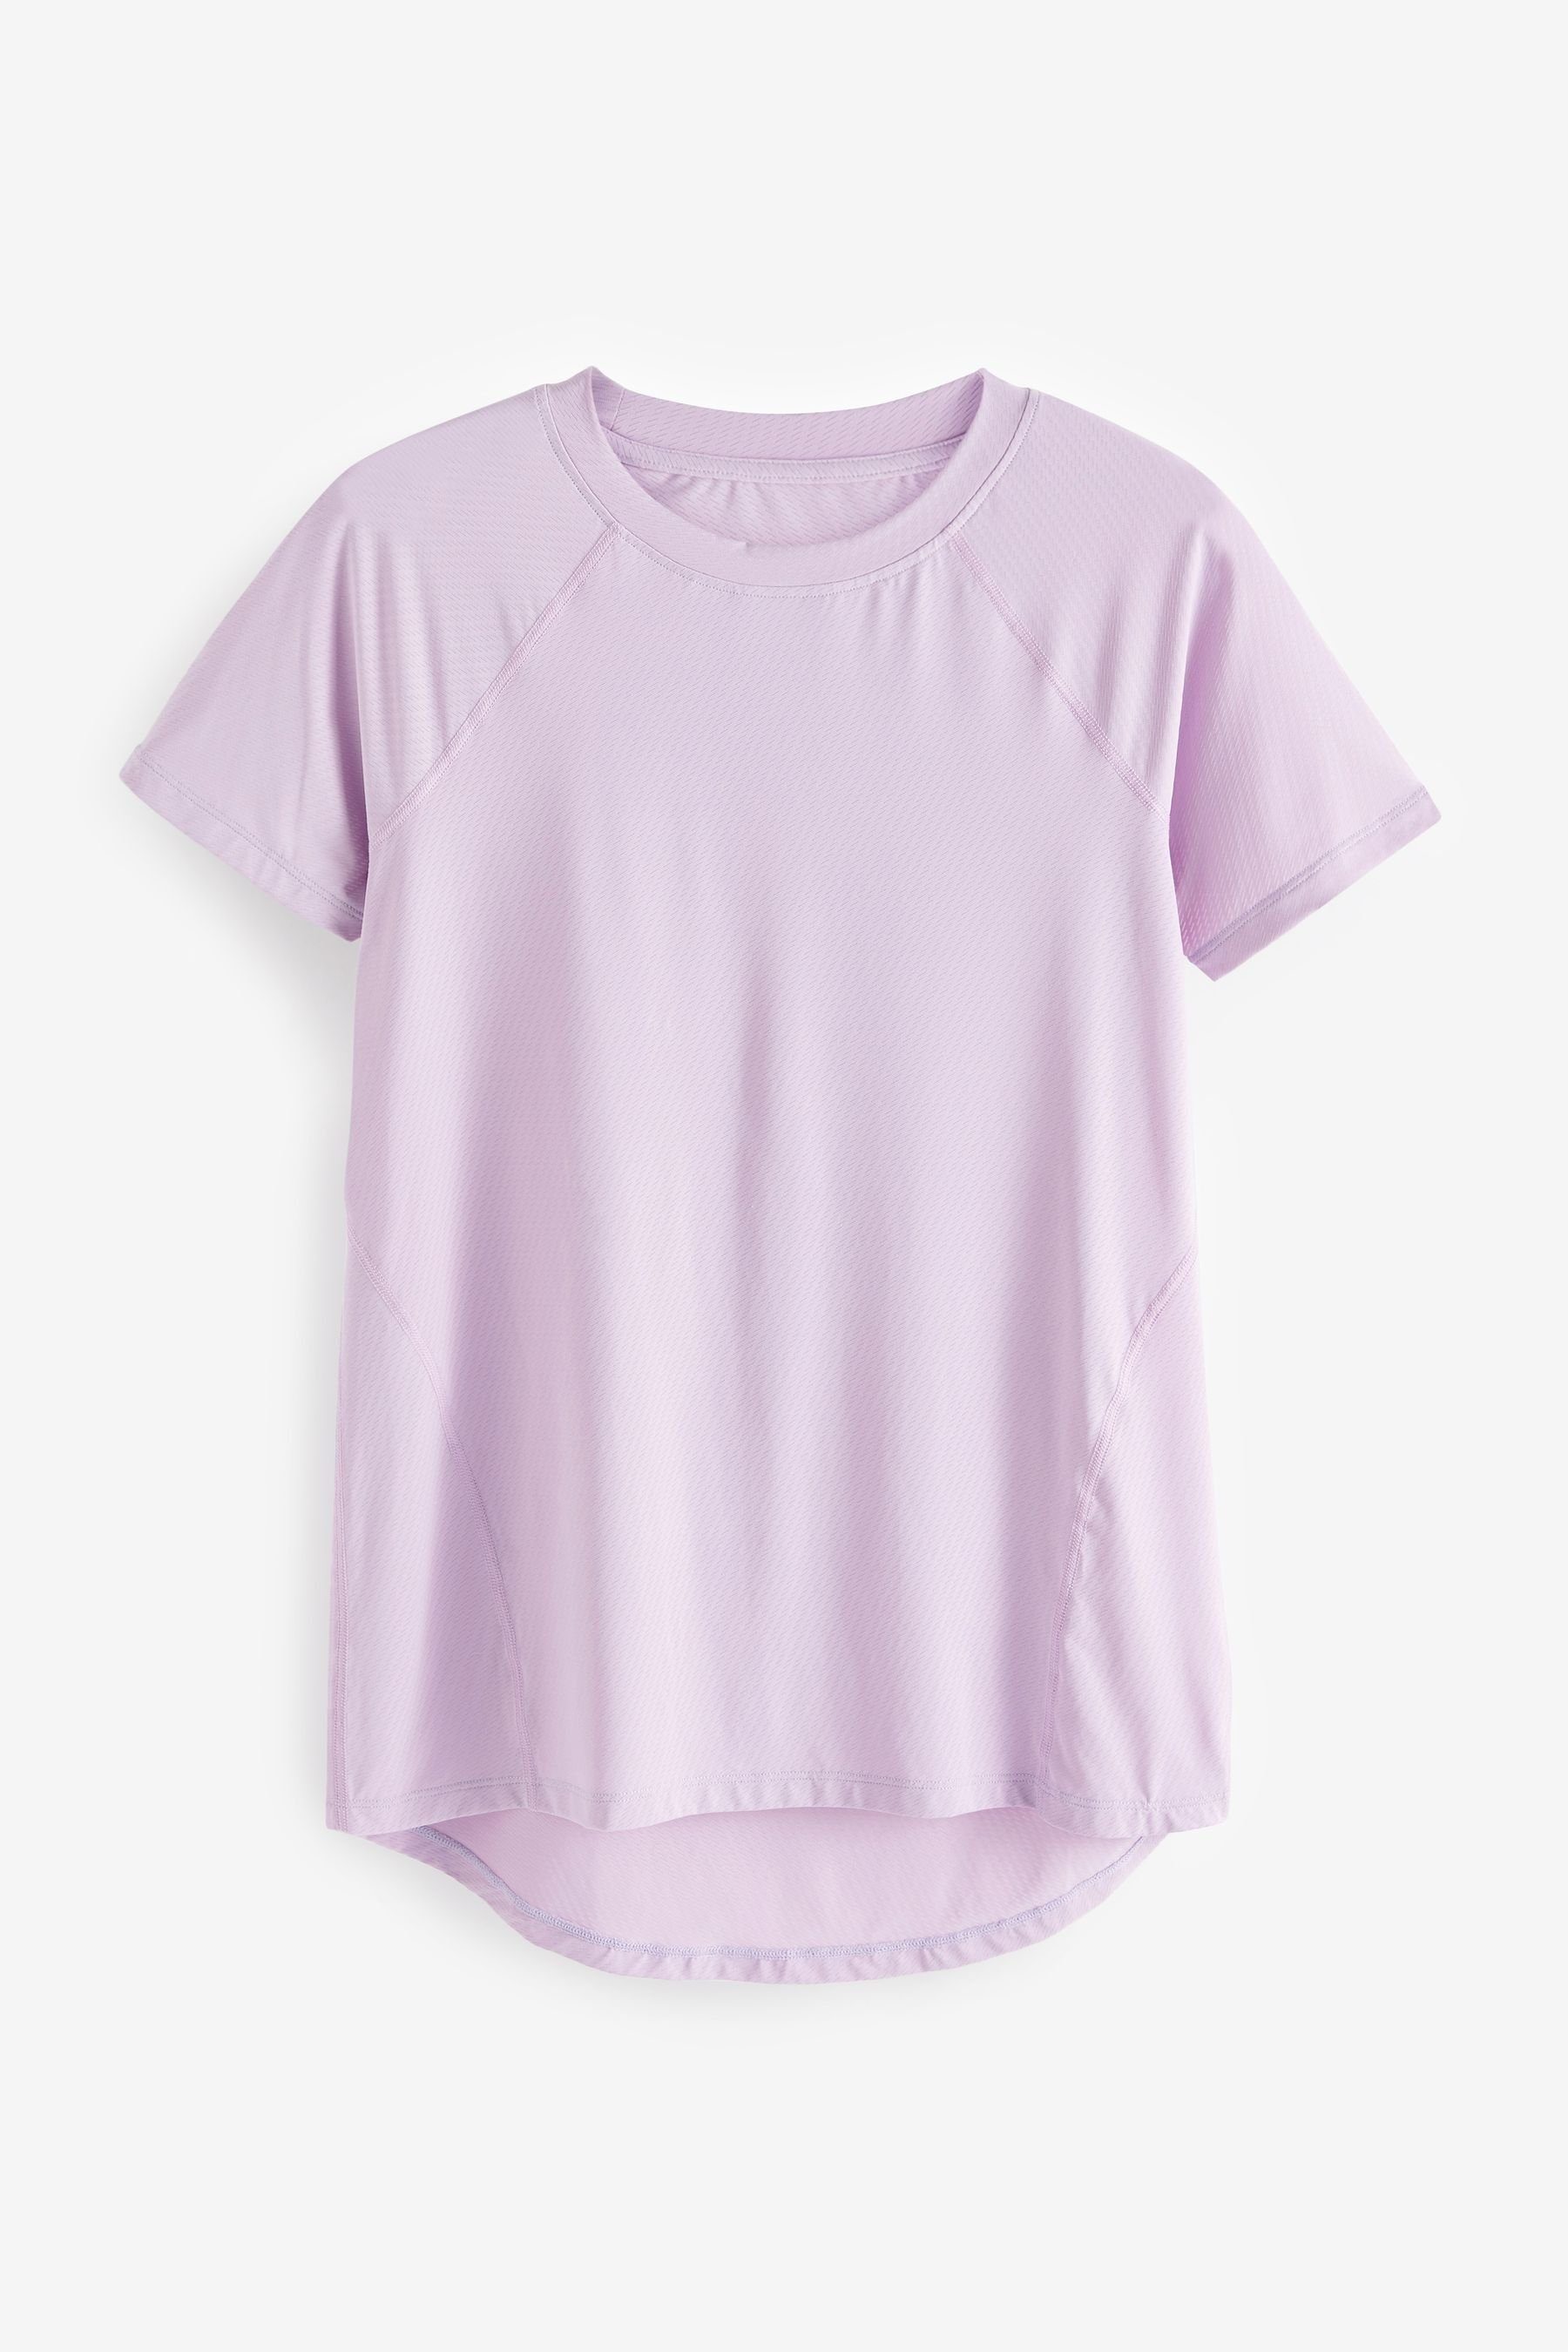 Next Sports (1-tlg) Purple T-Shirt Active Lilac T-Shirt Leichtes Next